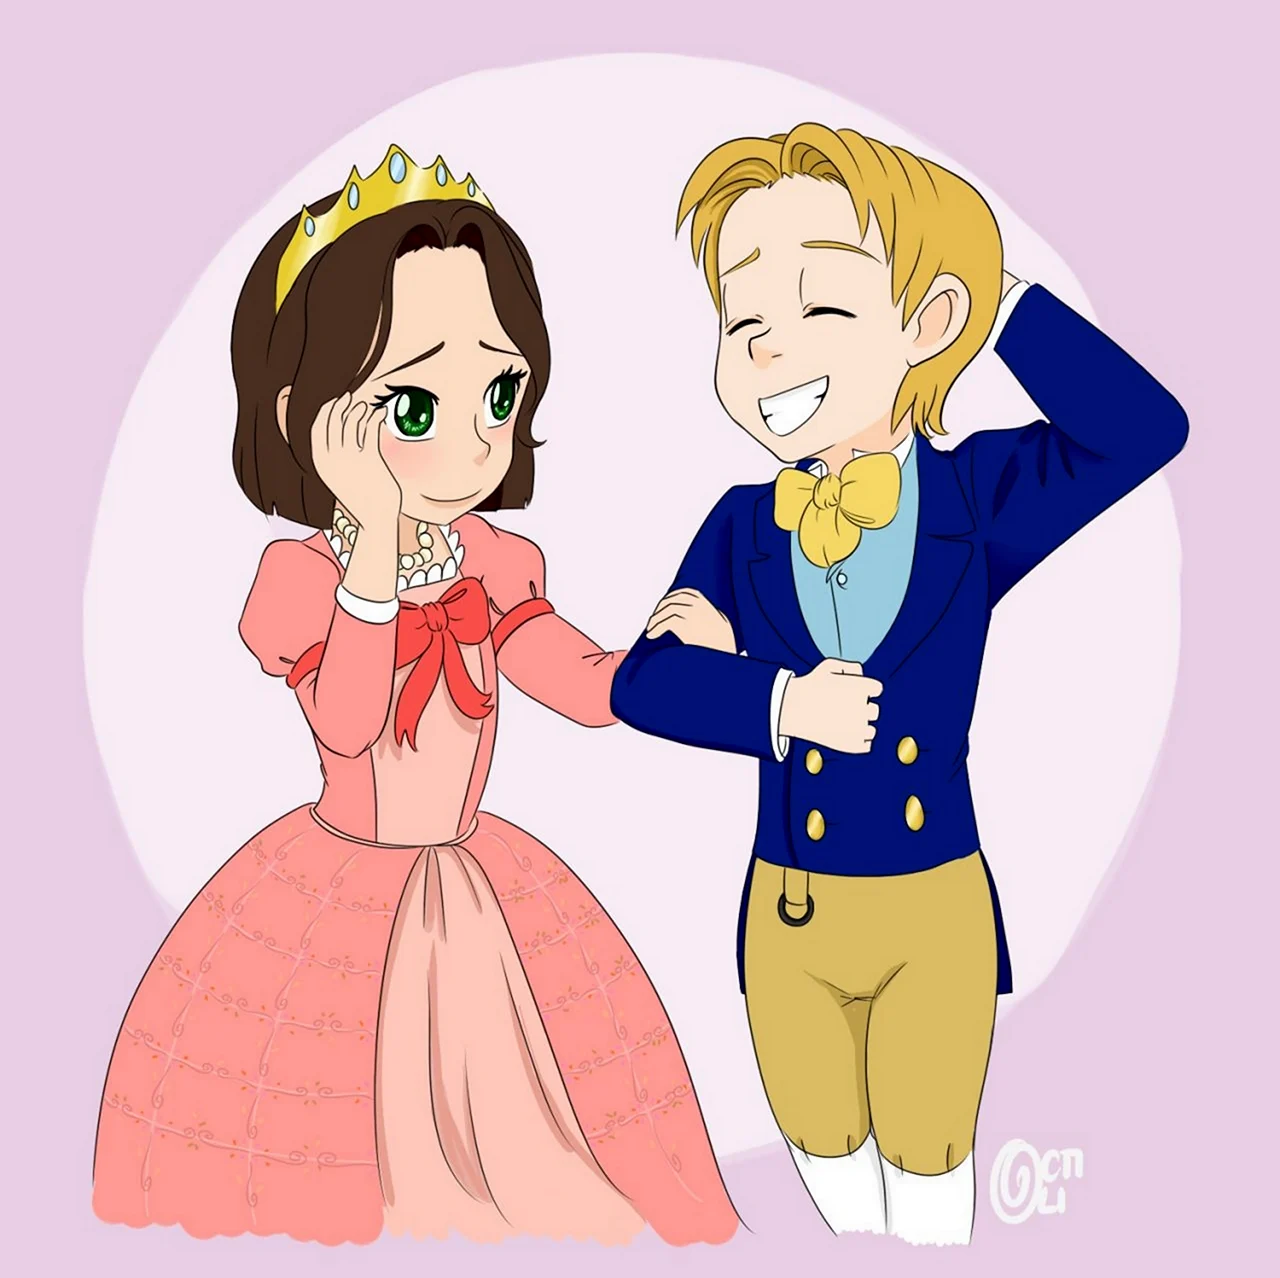 Принц Хьюго и принцесса Эмбер. Картинка из мультфильма